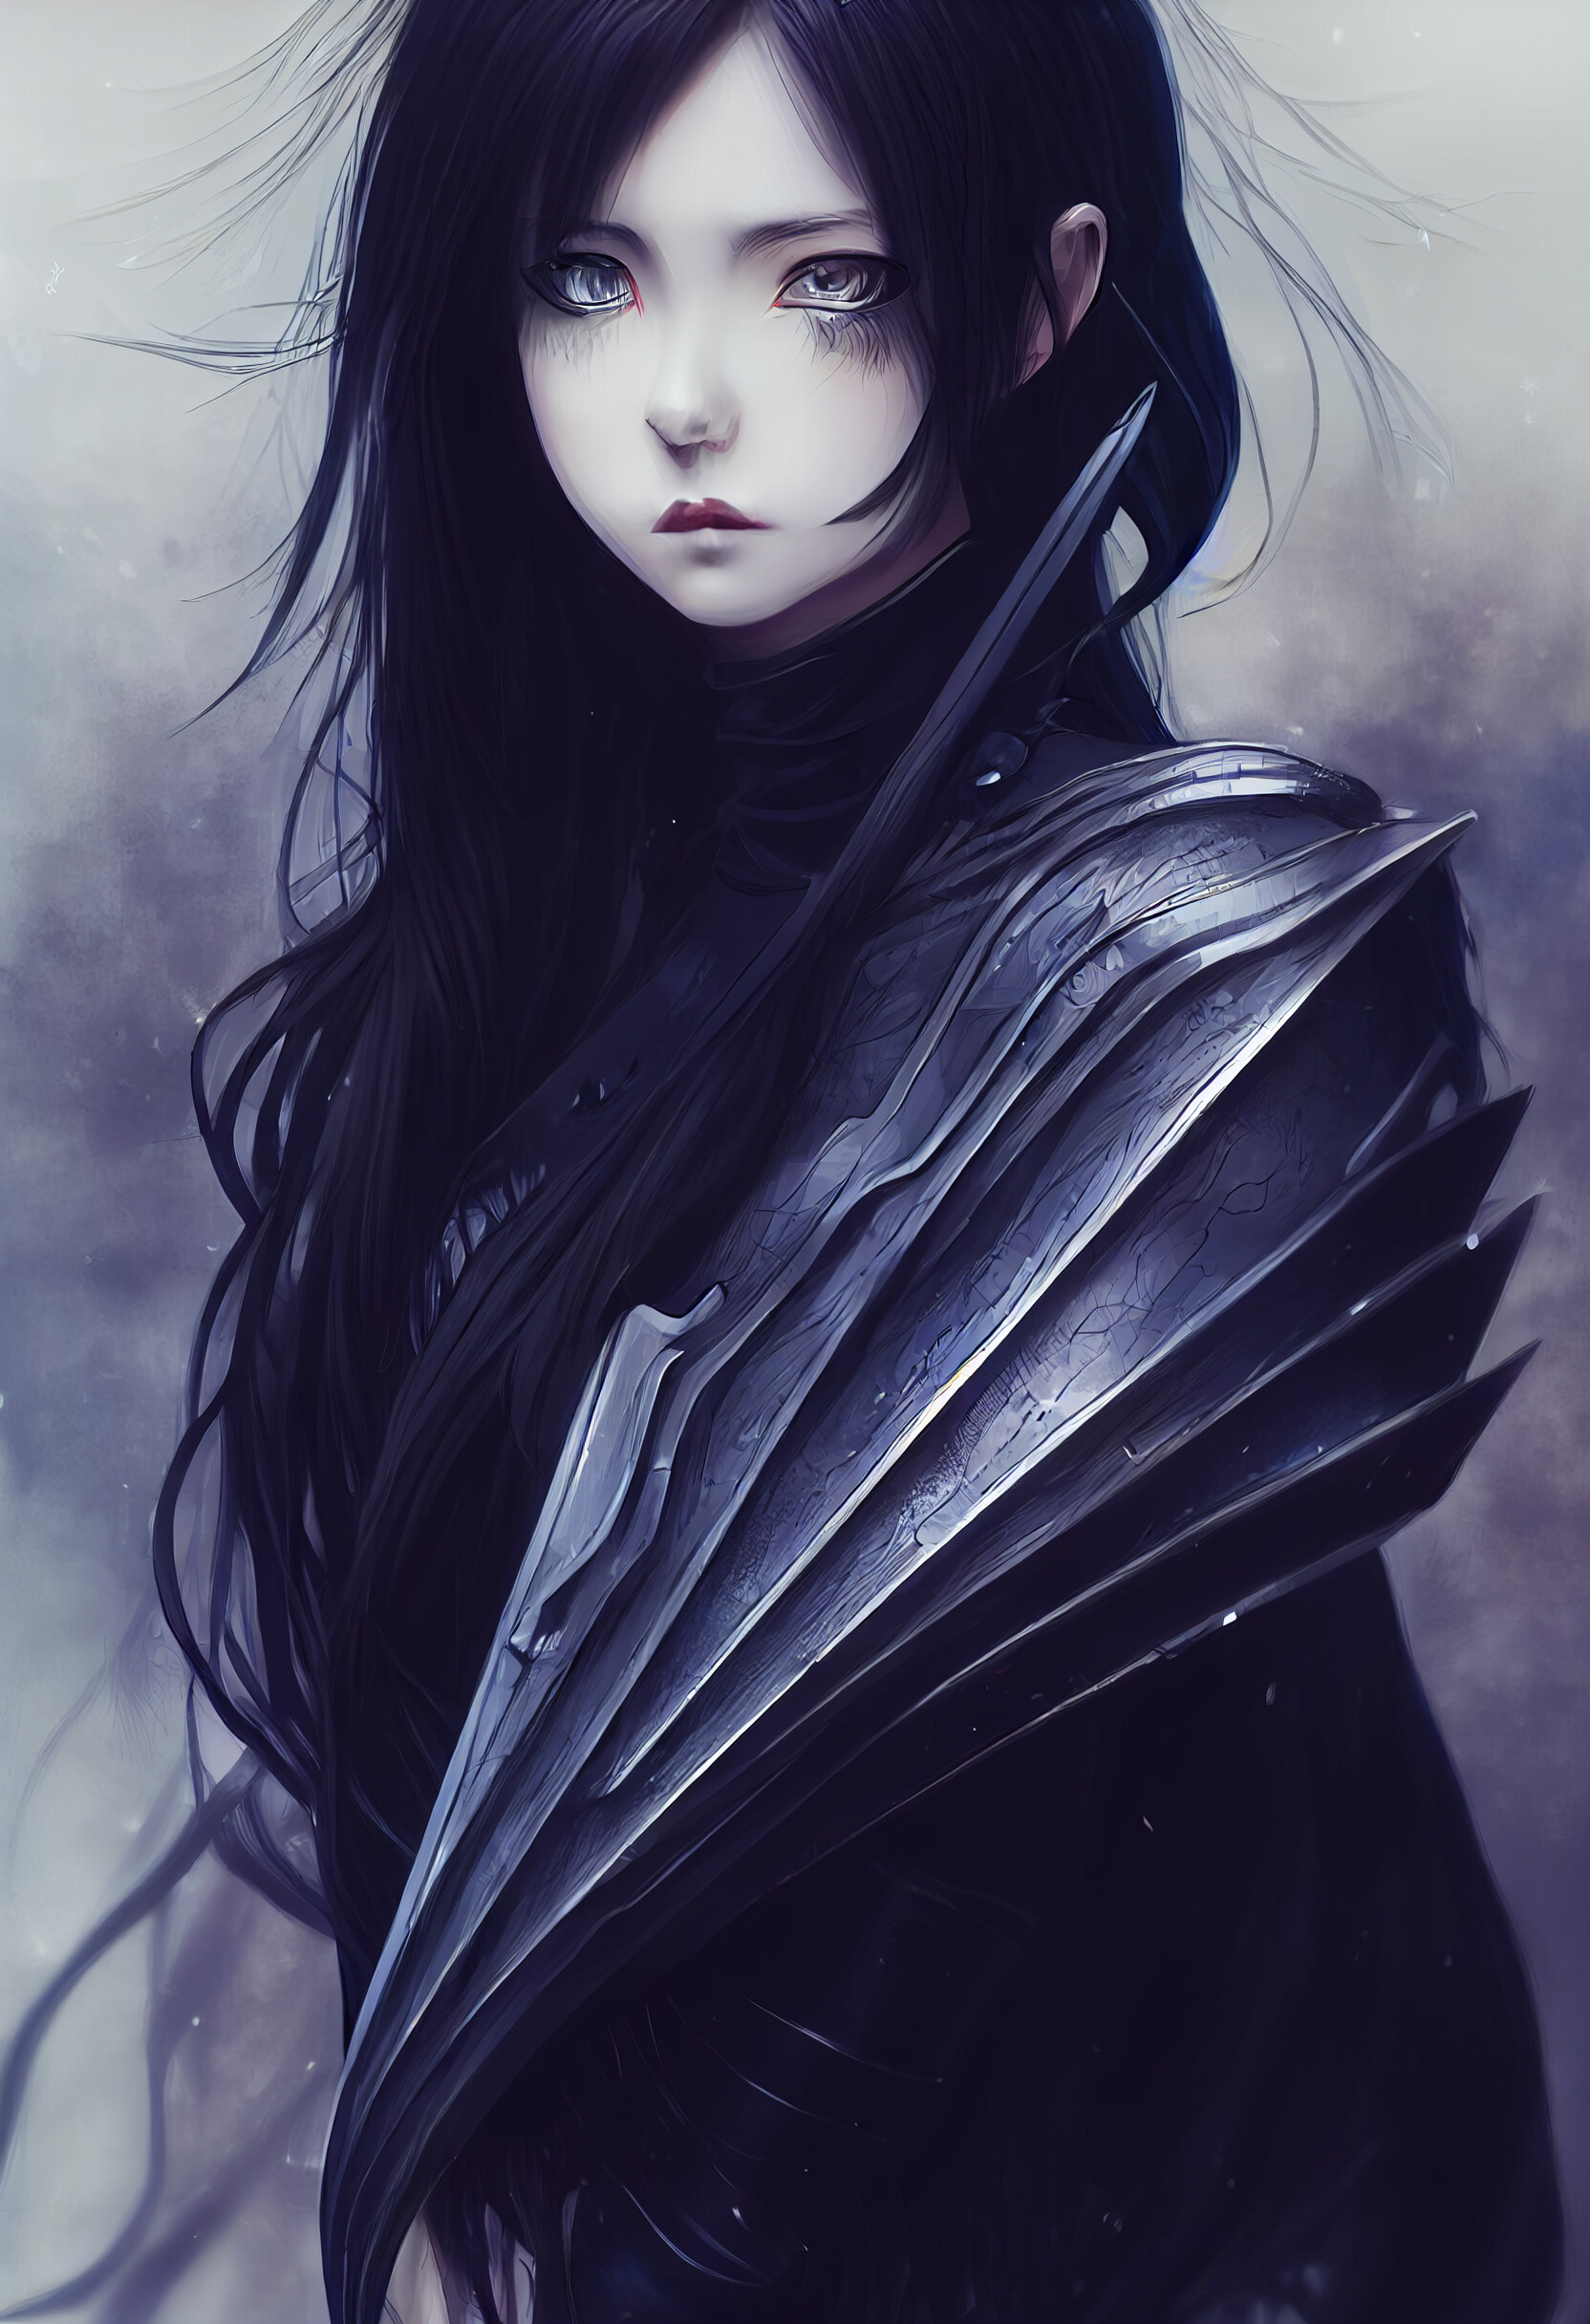 ArtStation - Gothic Styled Female knight